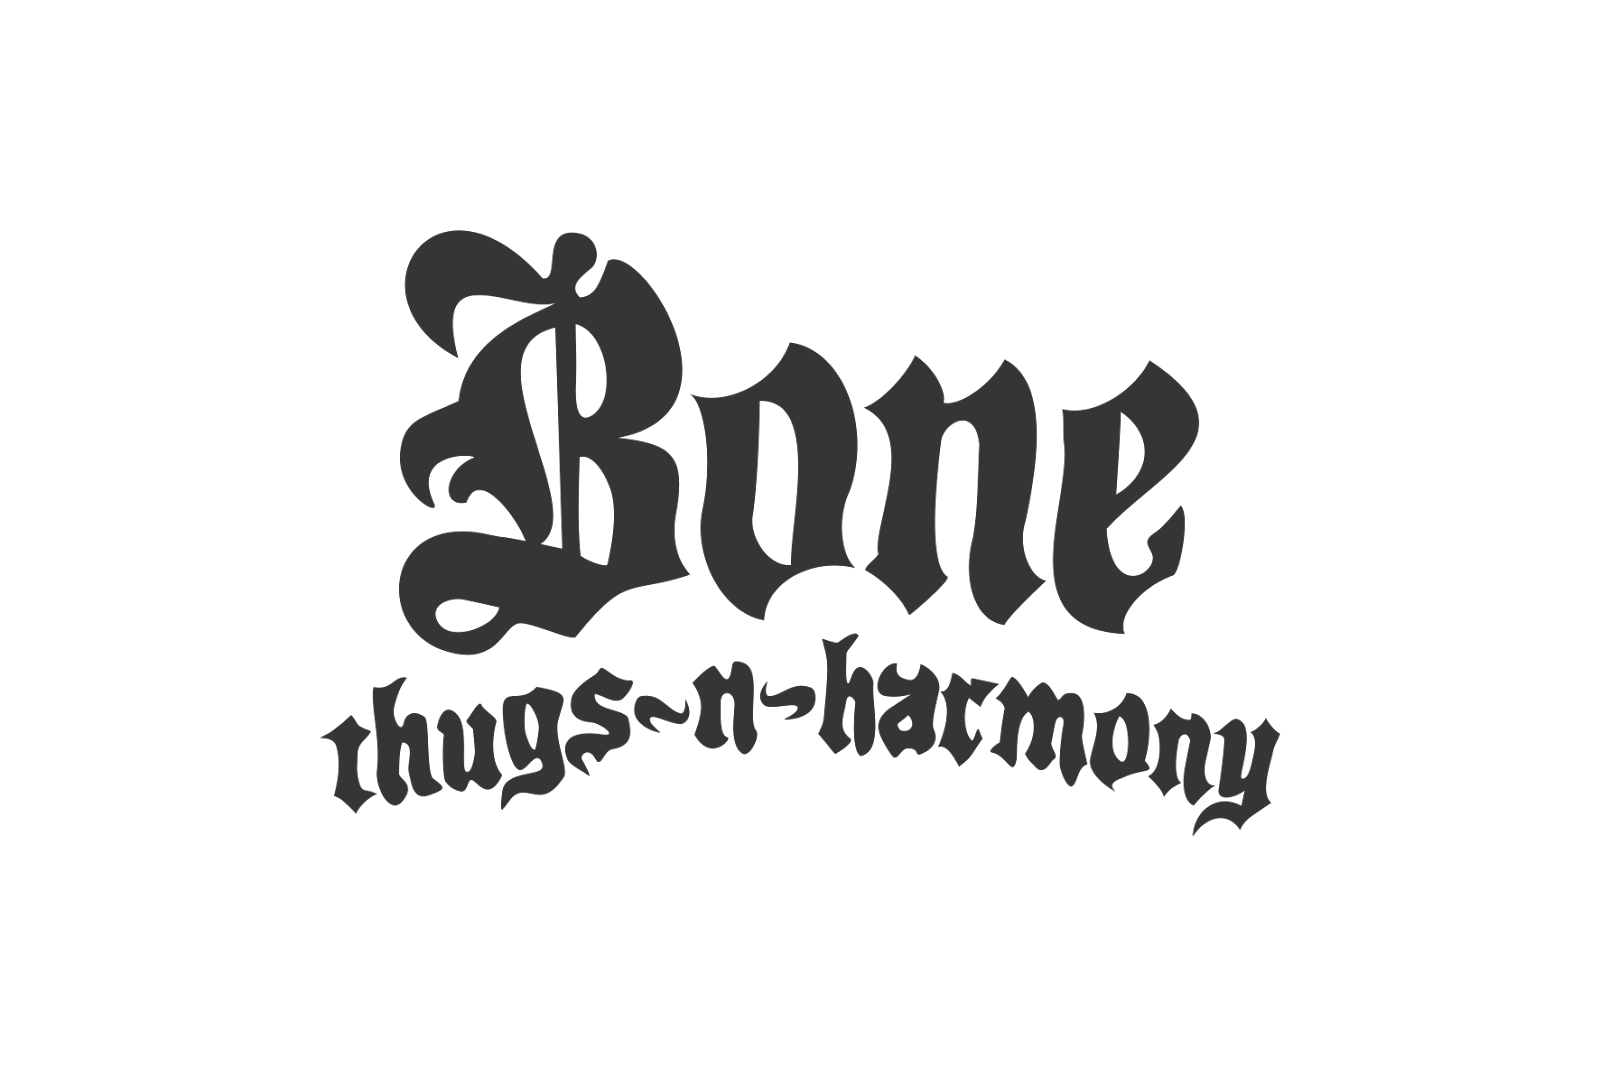 Bone n thugs. Bone Thugs-n-Harmony. Bone Thugs n Harmony logo. Bone Thugs -n - Harmony Rapper. Bones лого.